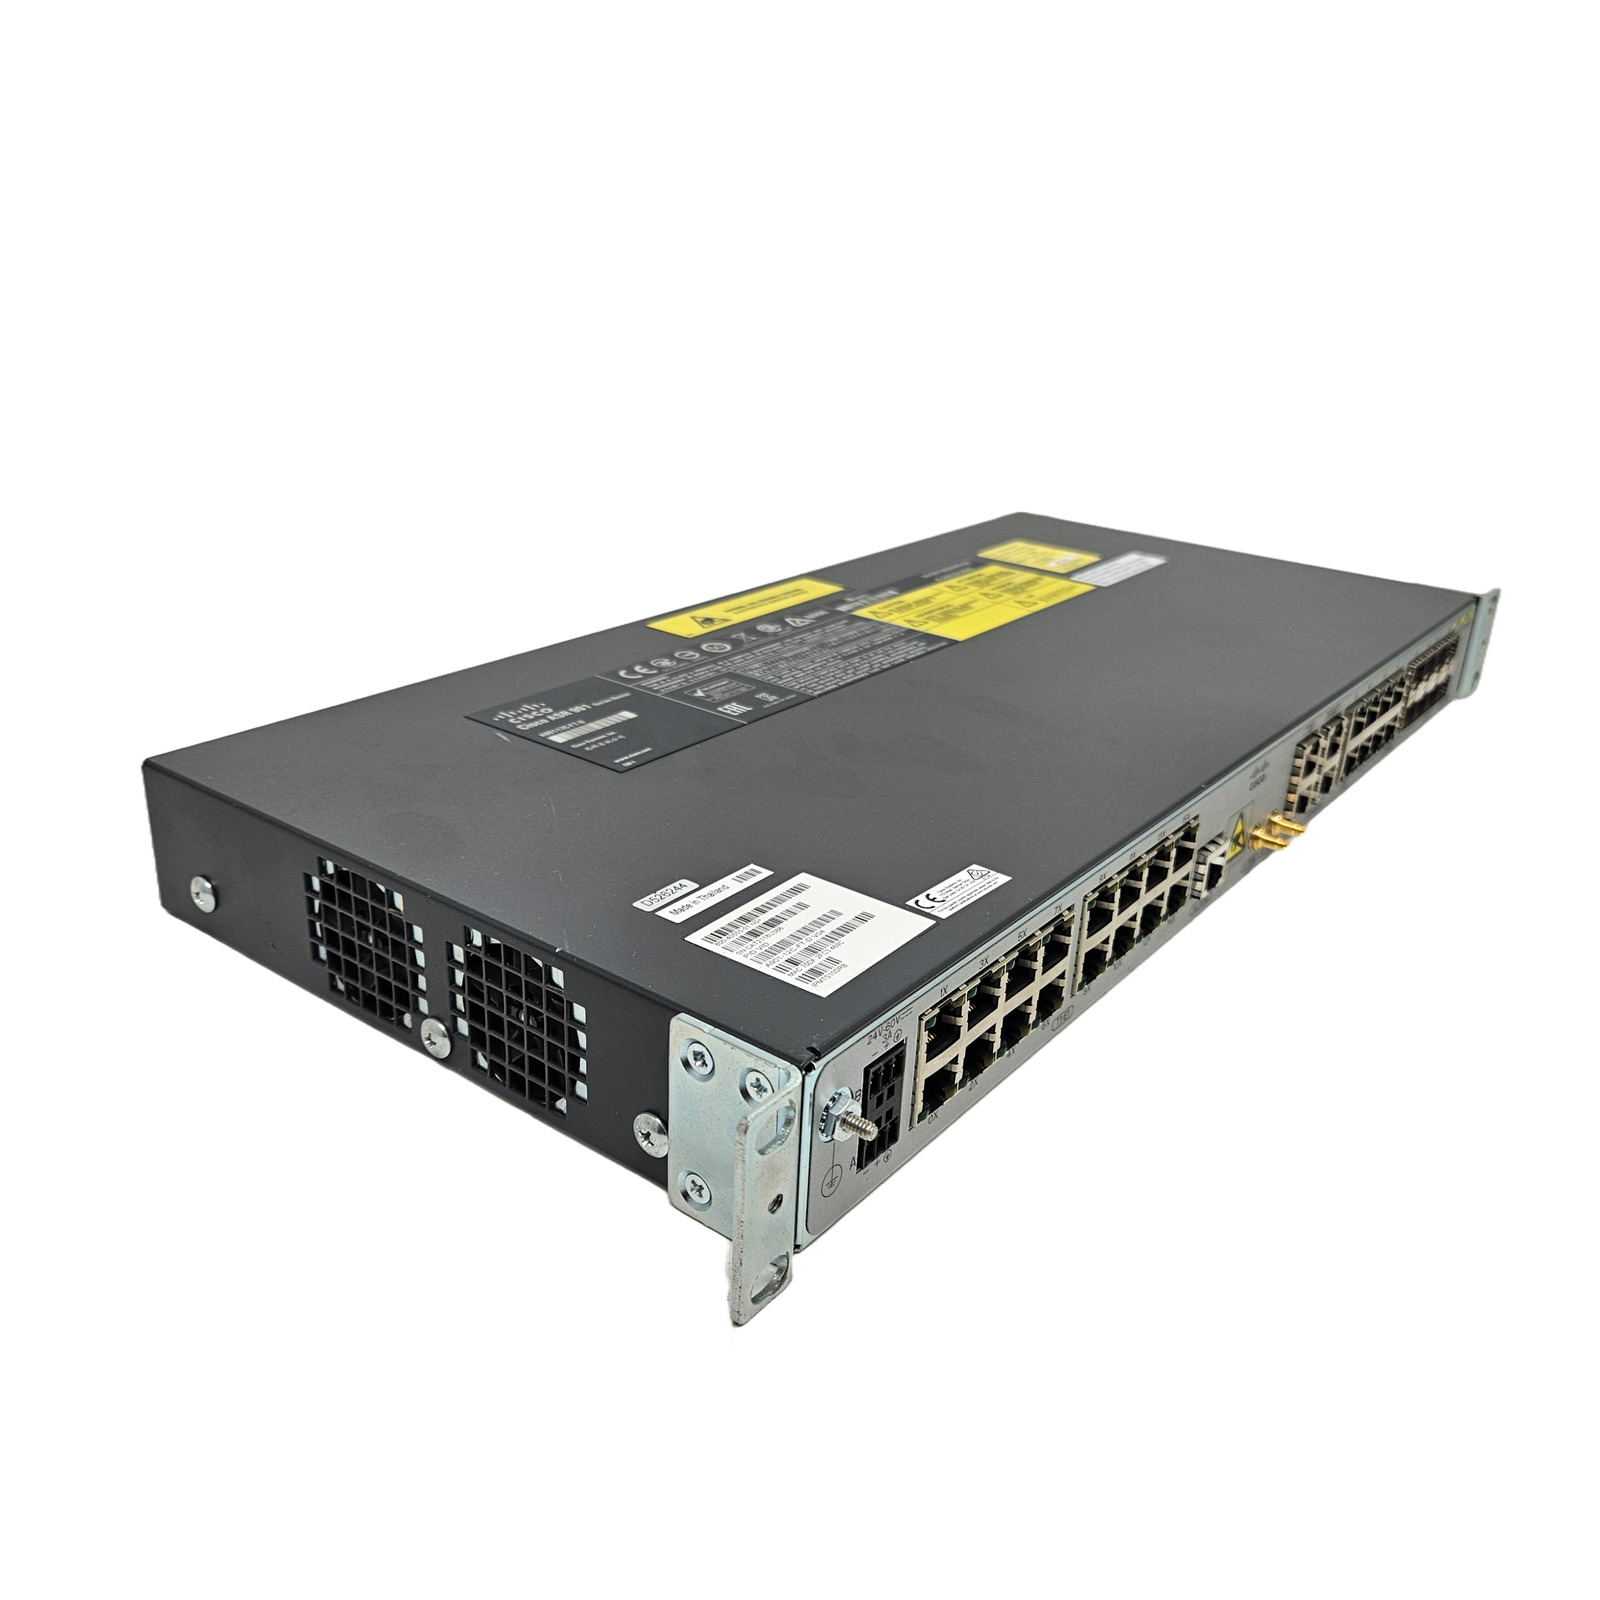 Cisco ASR 901 Aggregation Services Router A901-12C-FT-D - BENT PORTS